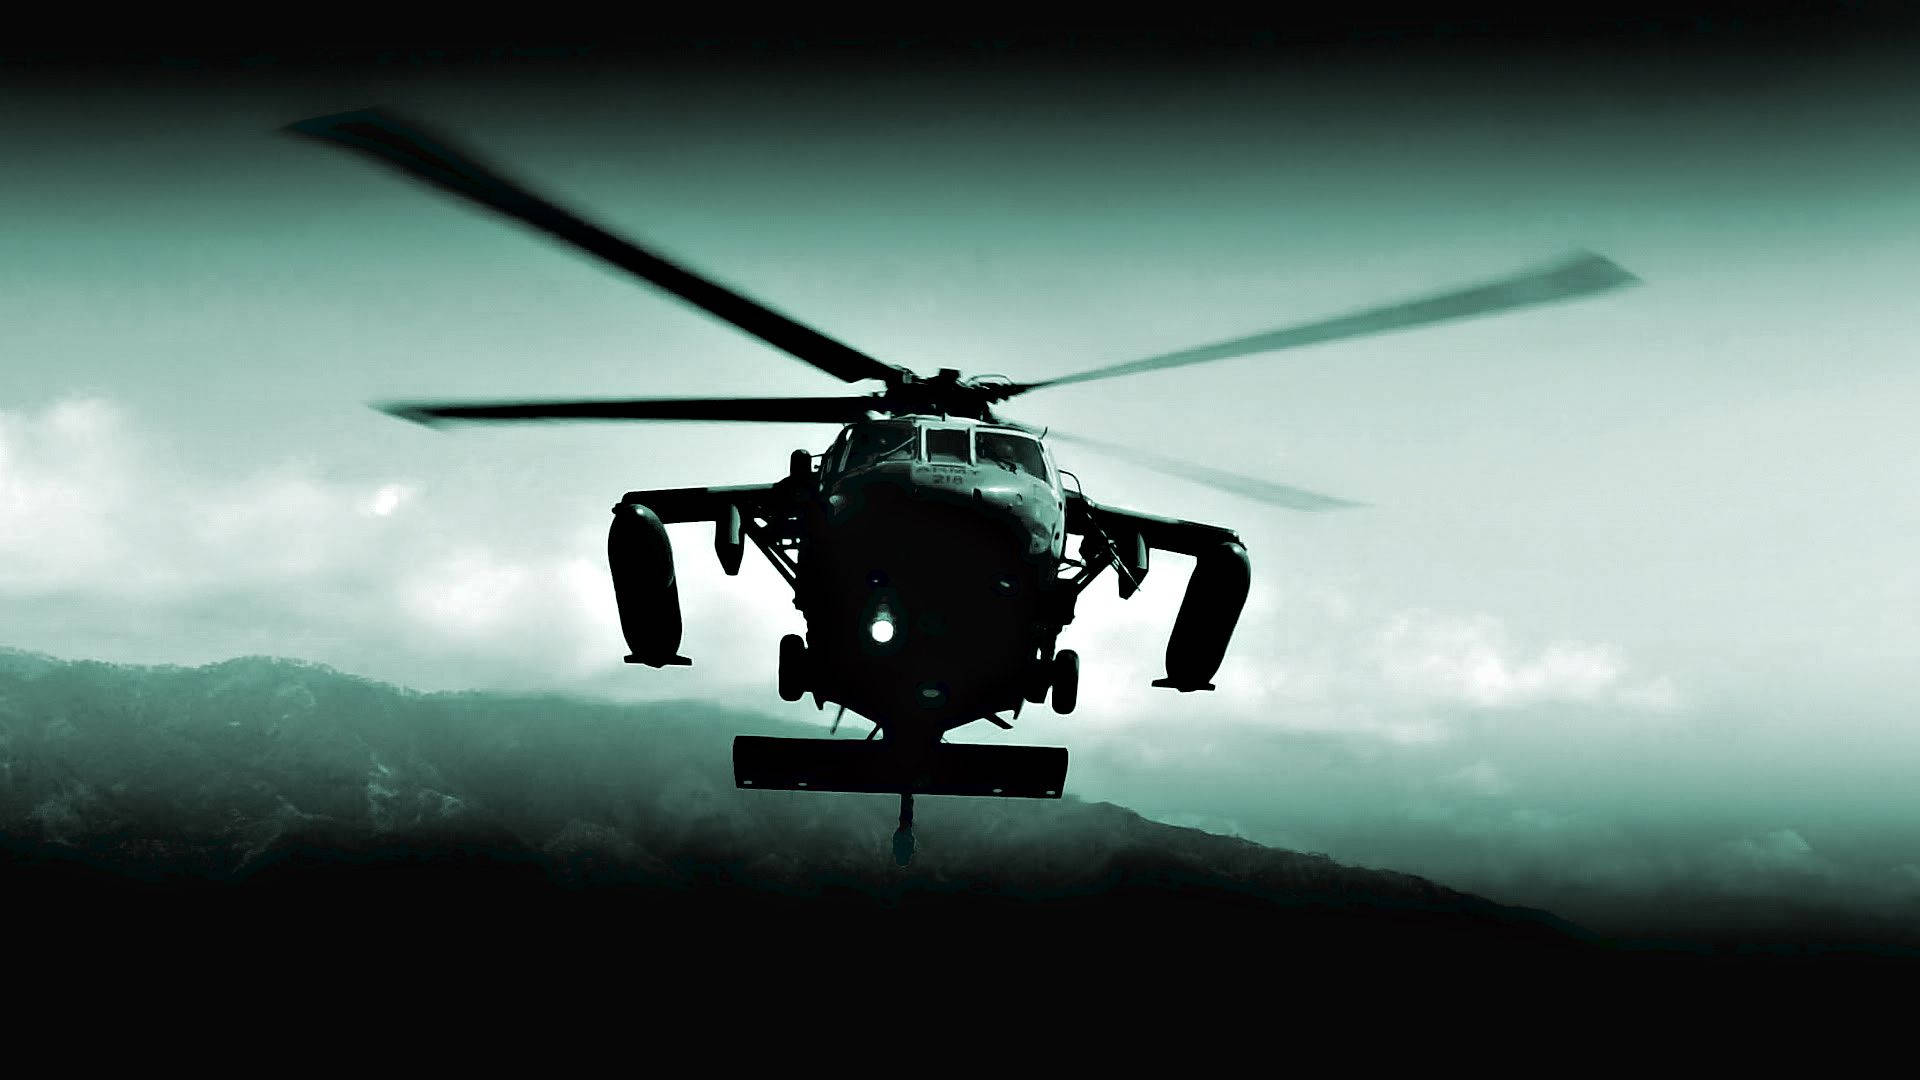 Unavista De Un Helicóptero Black Hawk Del Ejército De Los Estados Unidos En Acción. Fondo de pantalla